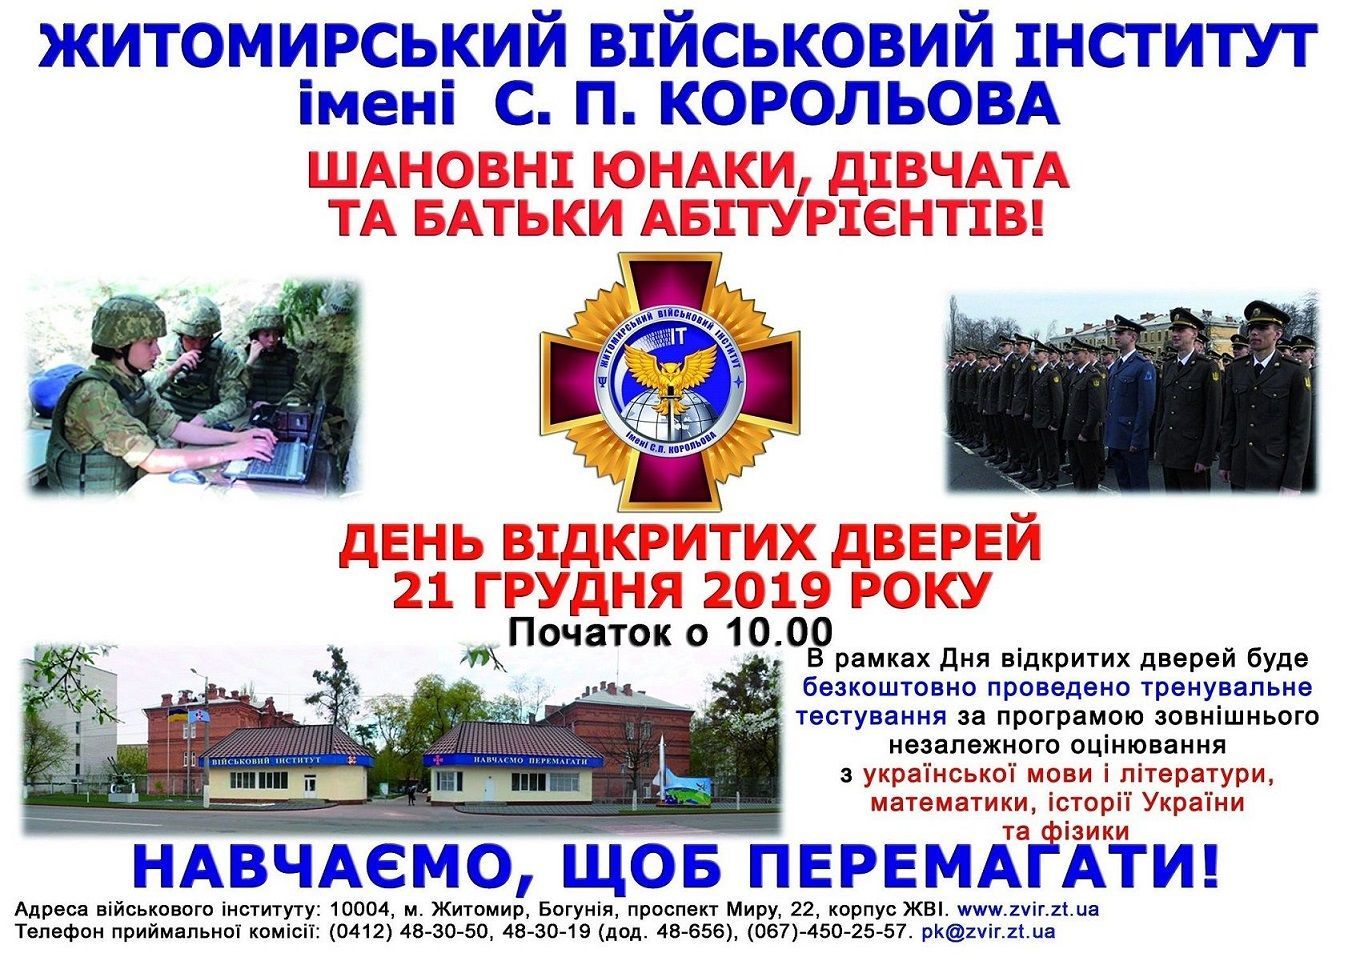 Житомирський військовий інститут імені Сергія Корольова запрошує на День відкритих дверей